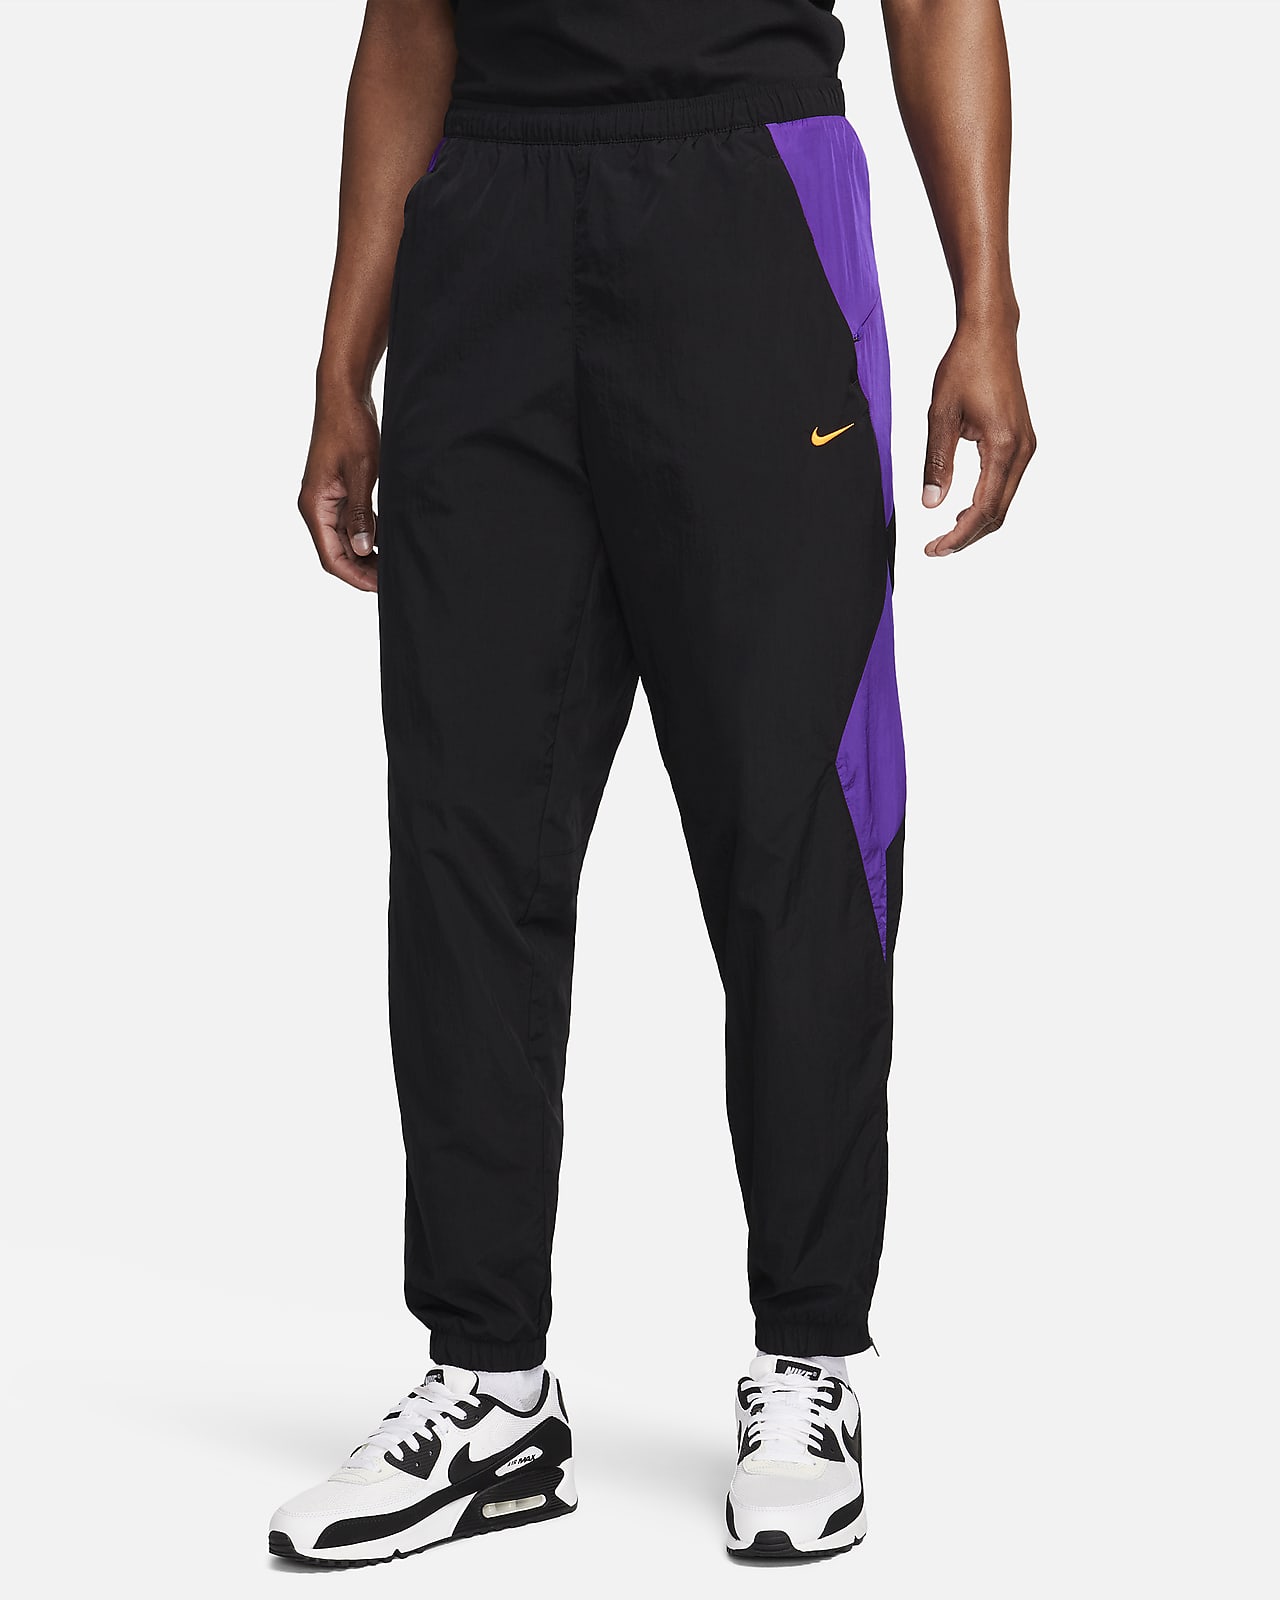 Nike Culture of Football Men's Therma-FIT Repel Football Pants. Nike CA